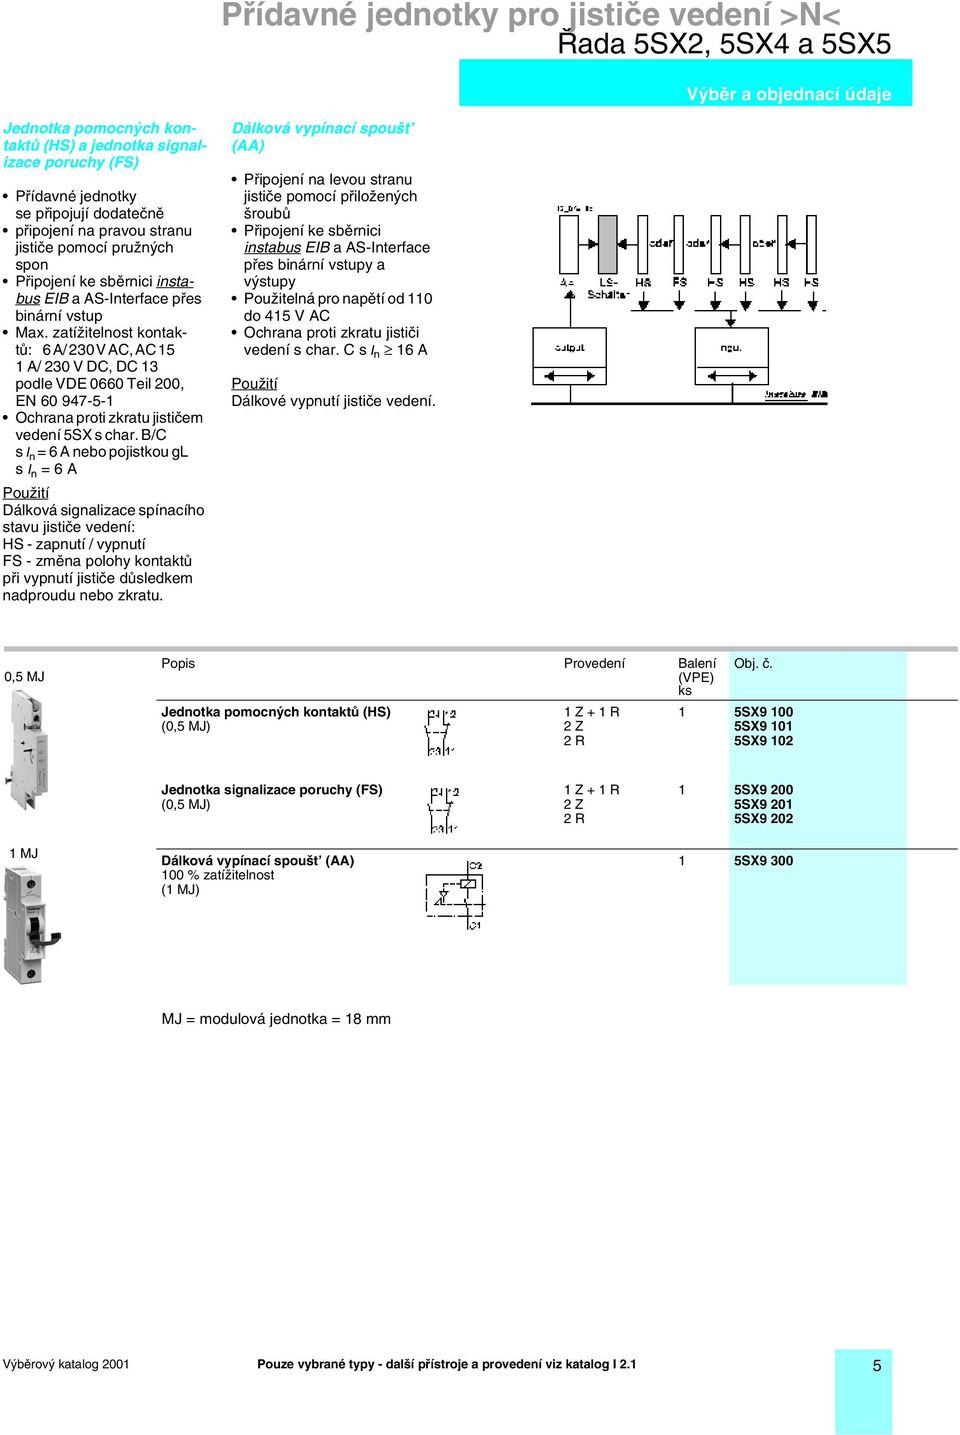 zatížitelnost kontaktů: 6 A/ 230 V AC, AC 15 1 A/ 230 V DC, DC 13 podle VDE 0660 Teil 200, EN 60 947-5-1 Ochrana proti zkratu jističem vedení 5SX s char.